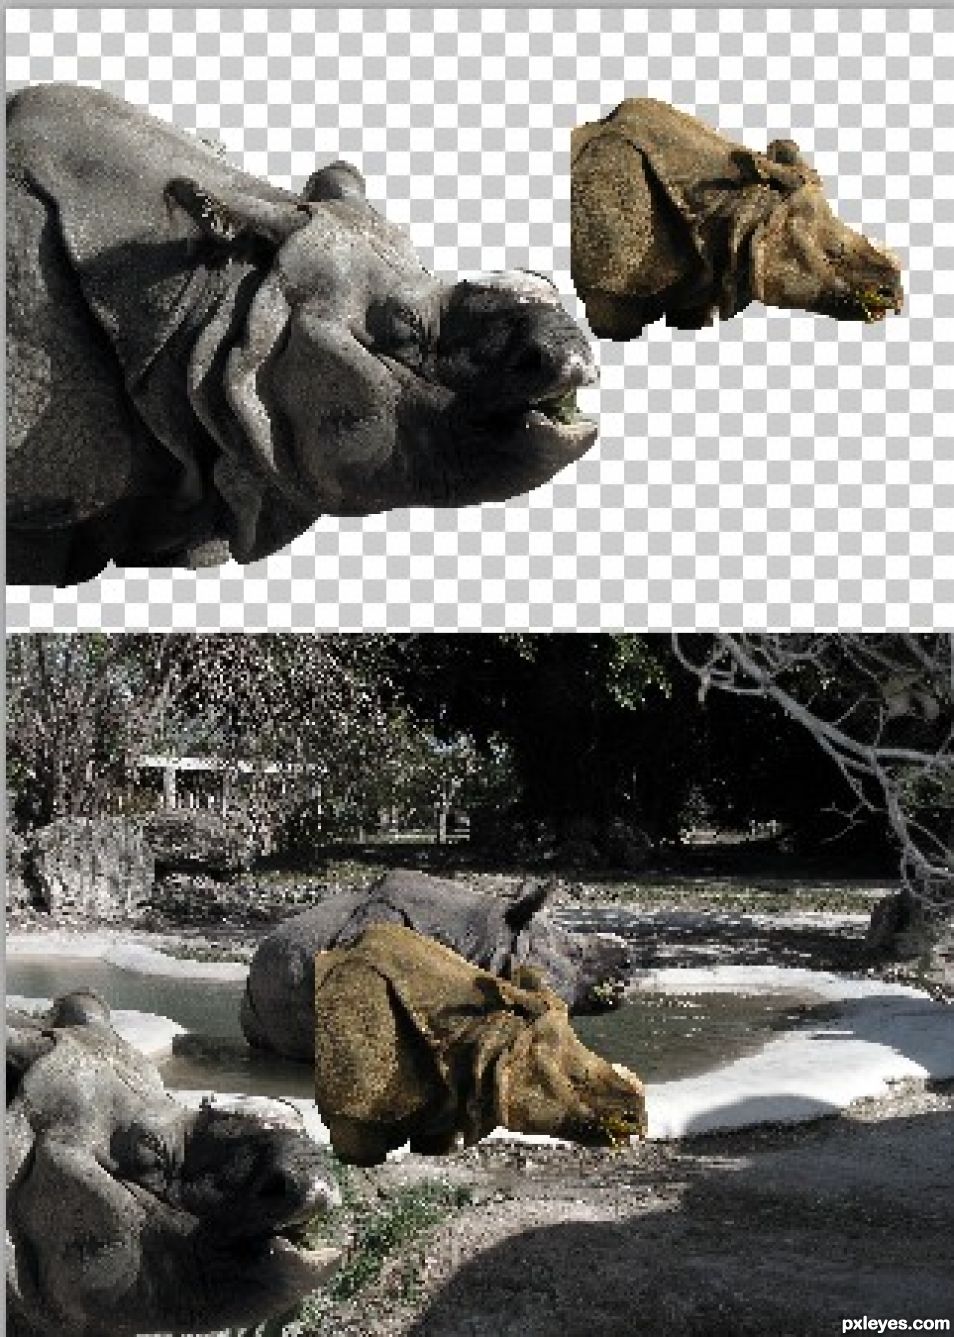 Creation of Rhino Triplets: Step 6